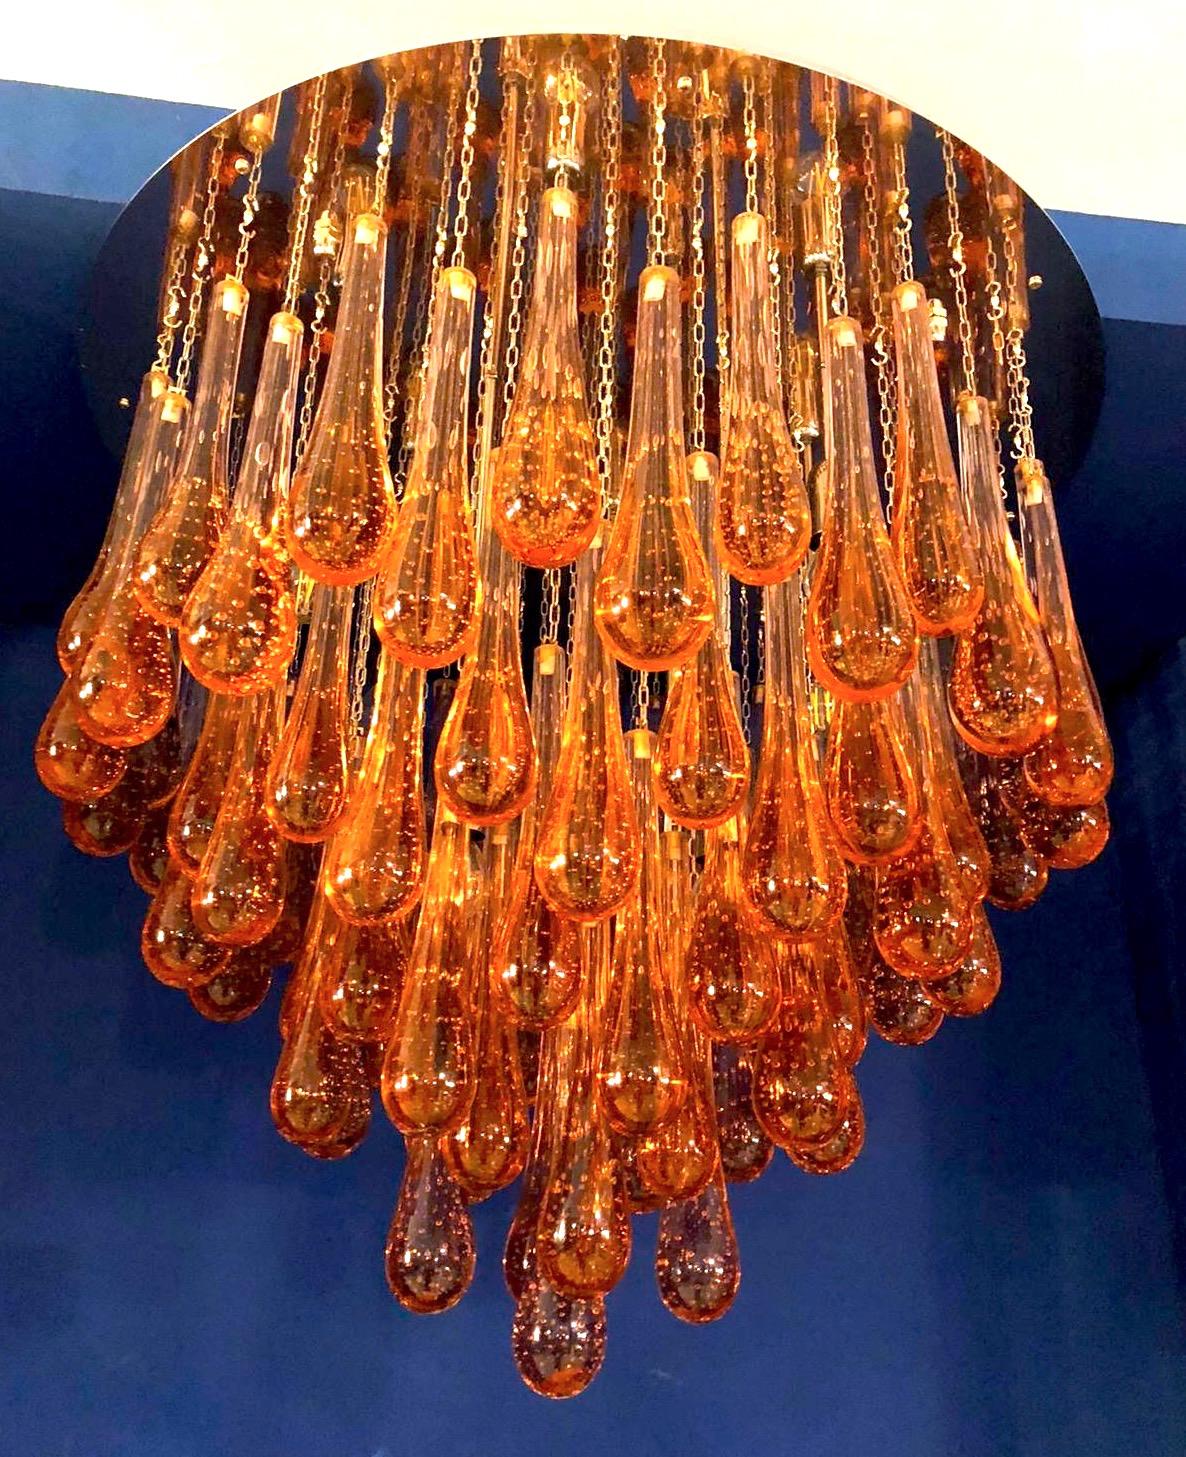 Moderner Muranoglas-Kronleuchter mit goldenen Tropfen auf Messingrahmen.
Vier E 14-Glühbirnen, verdrahtet nach US-Norm.
Variationen möglich, Größe, Ausführung, Glasfarbe.